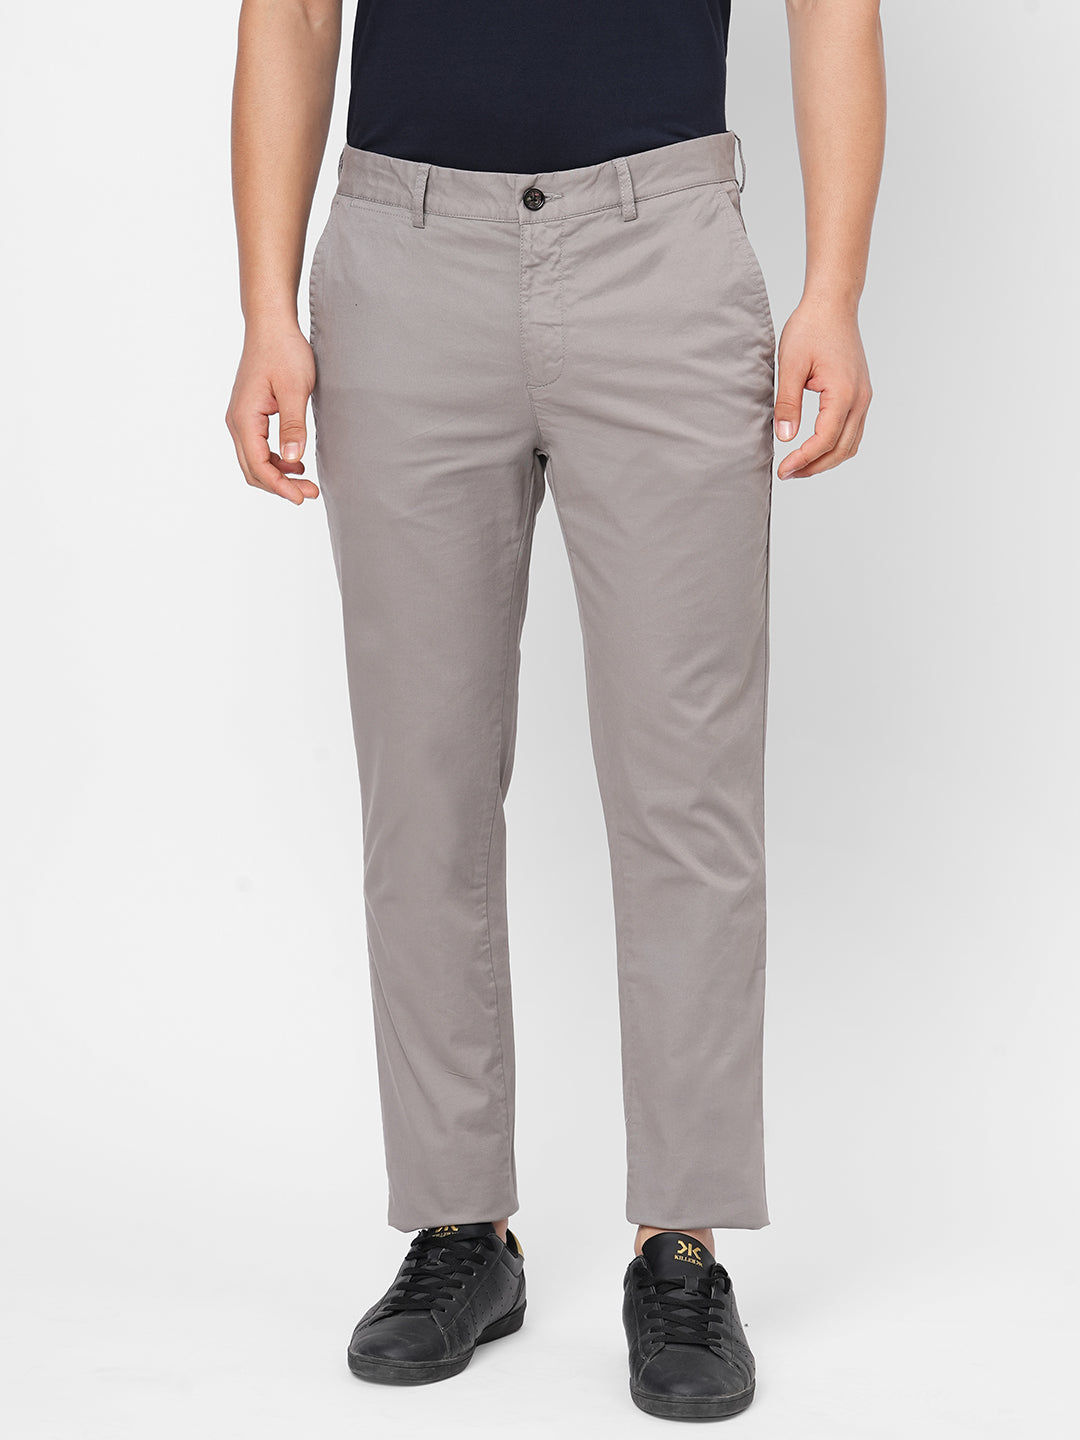 Men's Cotton Lycra Grey Slim Fit Pant